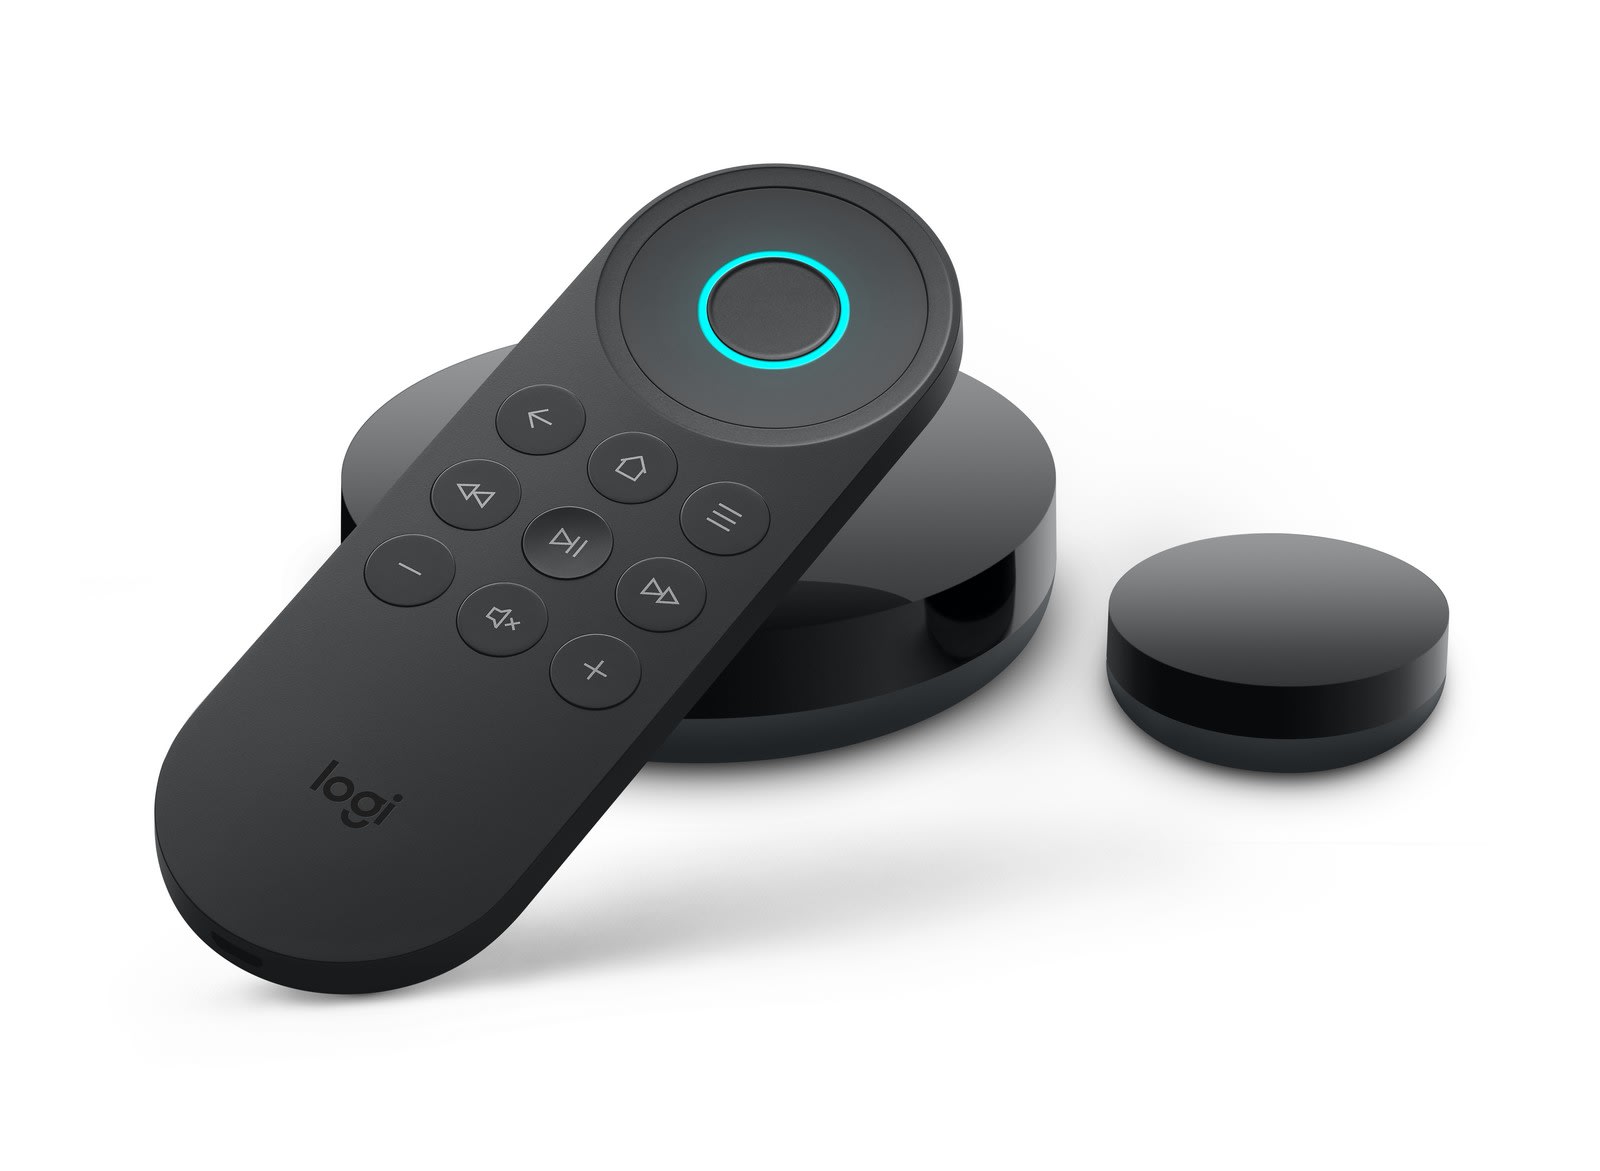 Logitech's Express is sleek Alexa-powered universal remote | Engadget